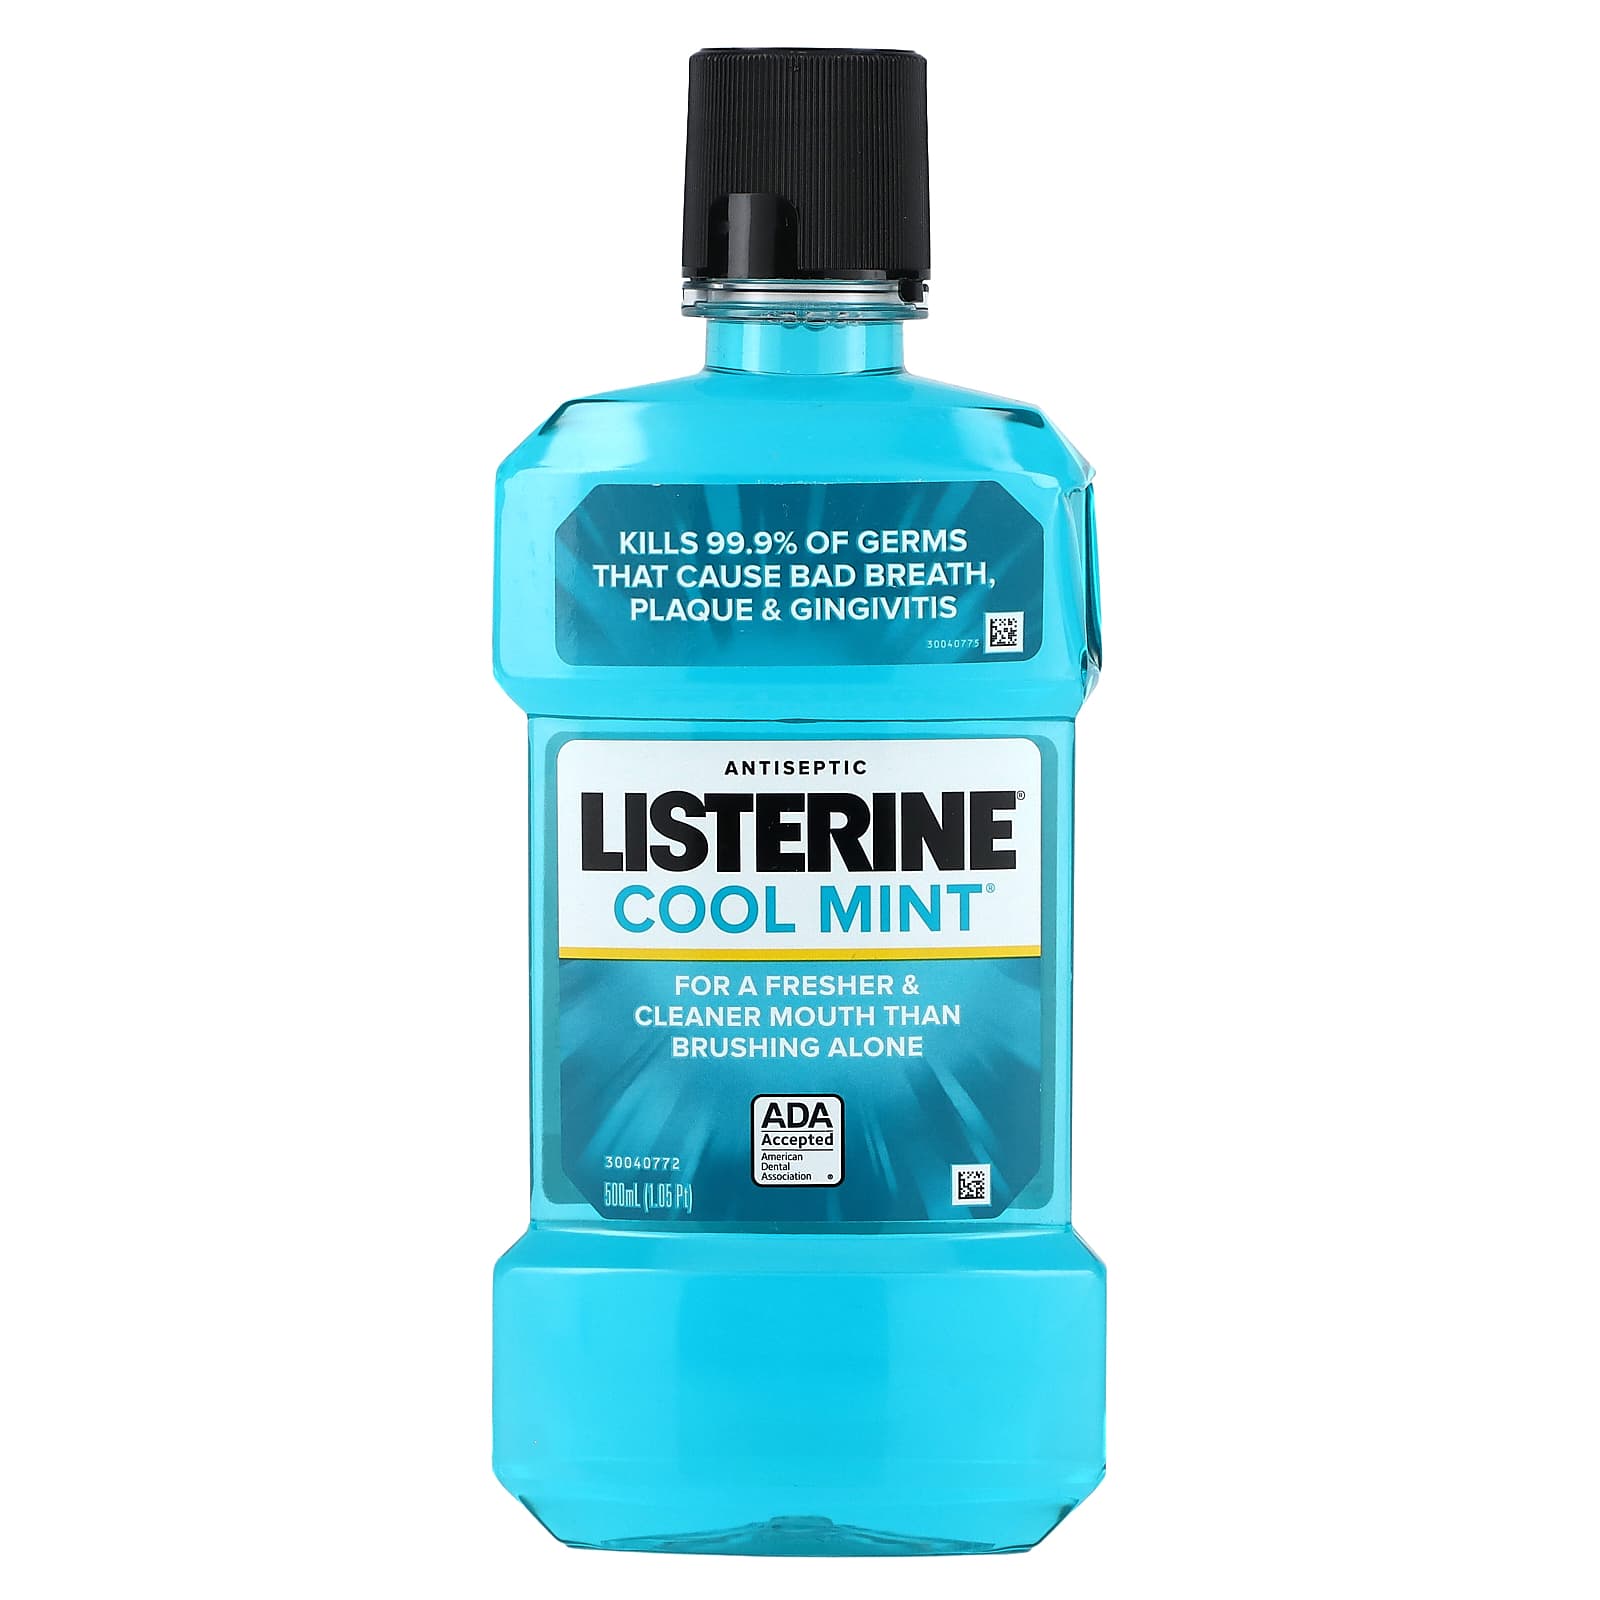 Listerine, Antiseptic, Cool Mint, 1.05 pt (500 ml)